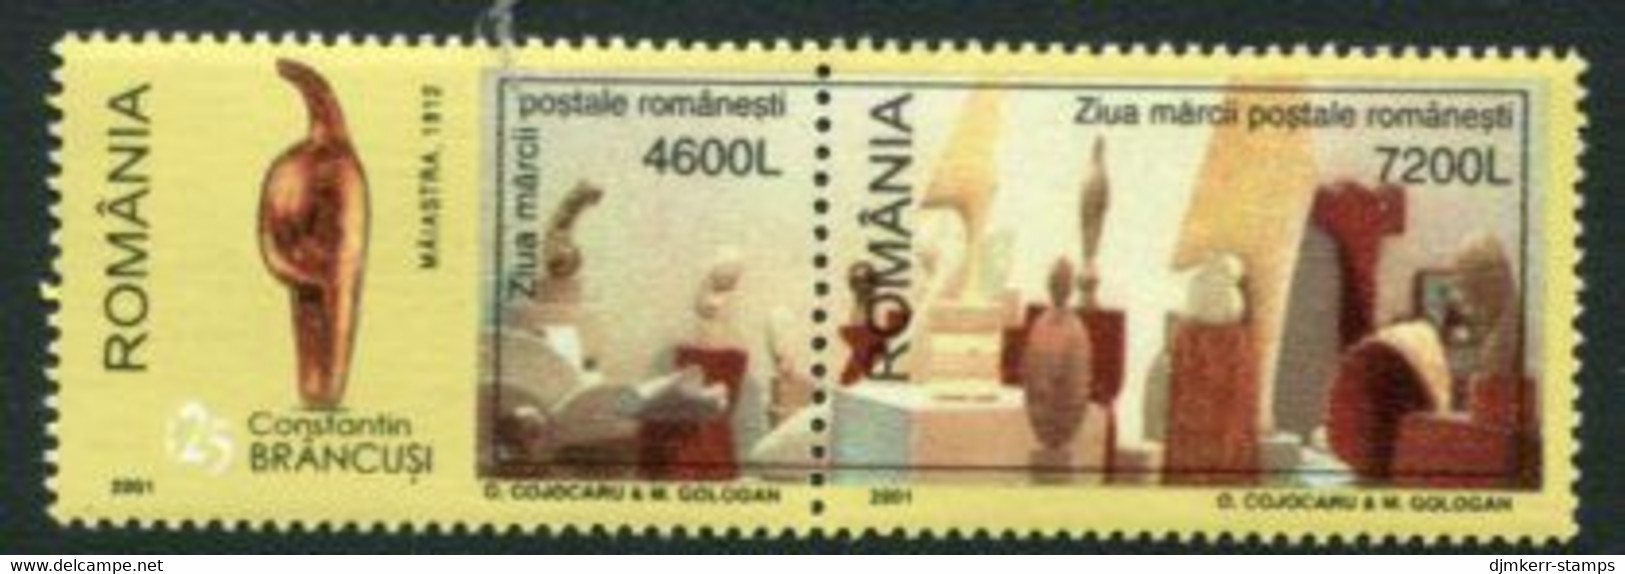 ROMANIA 2001 Stamp Day MNH / **.  Michel 5550-51 - Ungebraucht